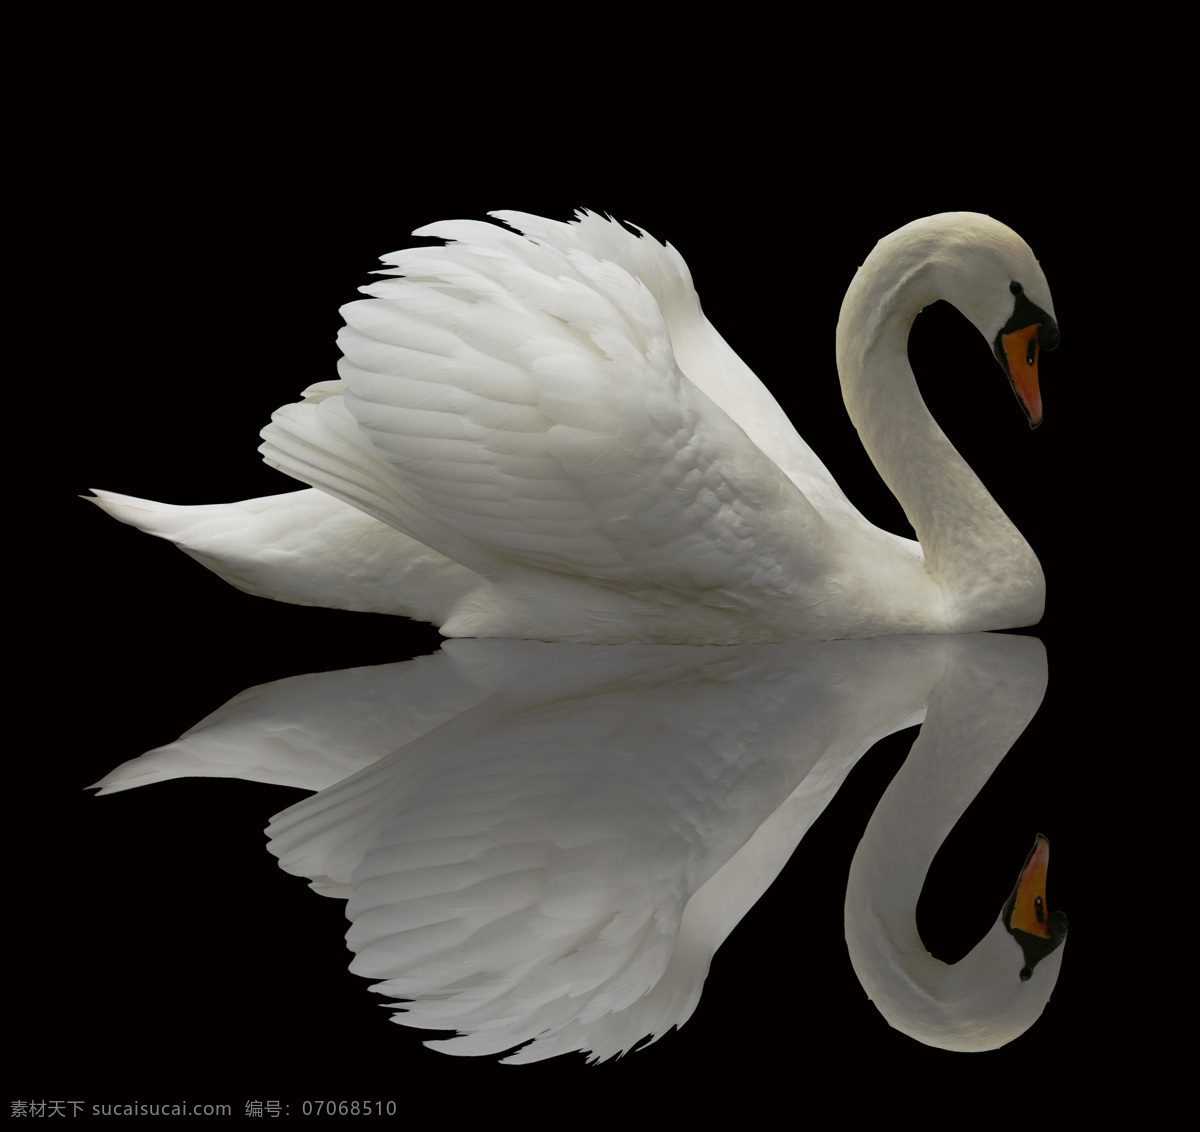 高清 天鹅 素材图片 天鹅摄影 天鹅素材 动物 动物世界 空中飞鸟 生物世界